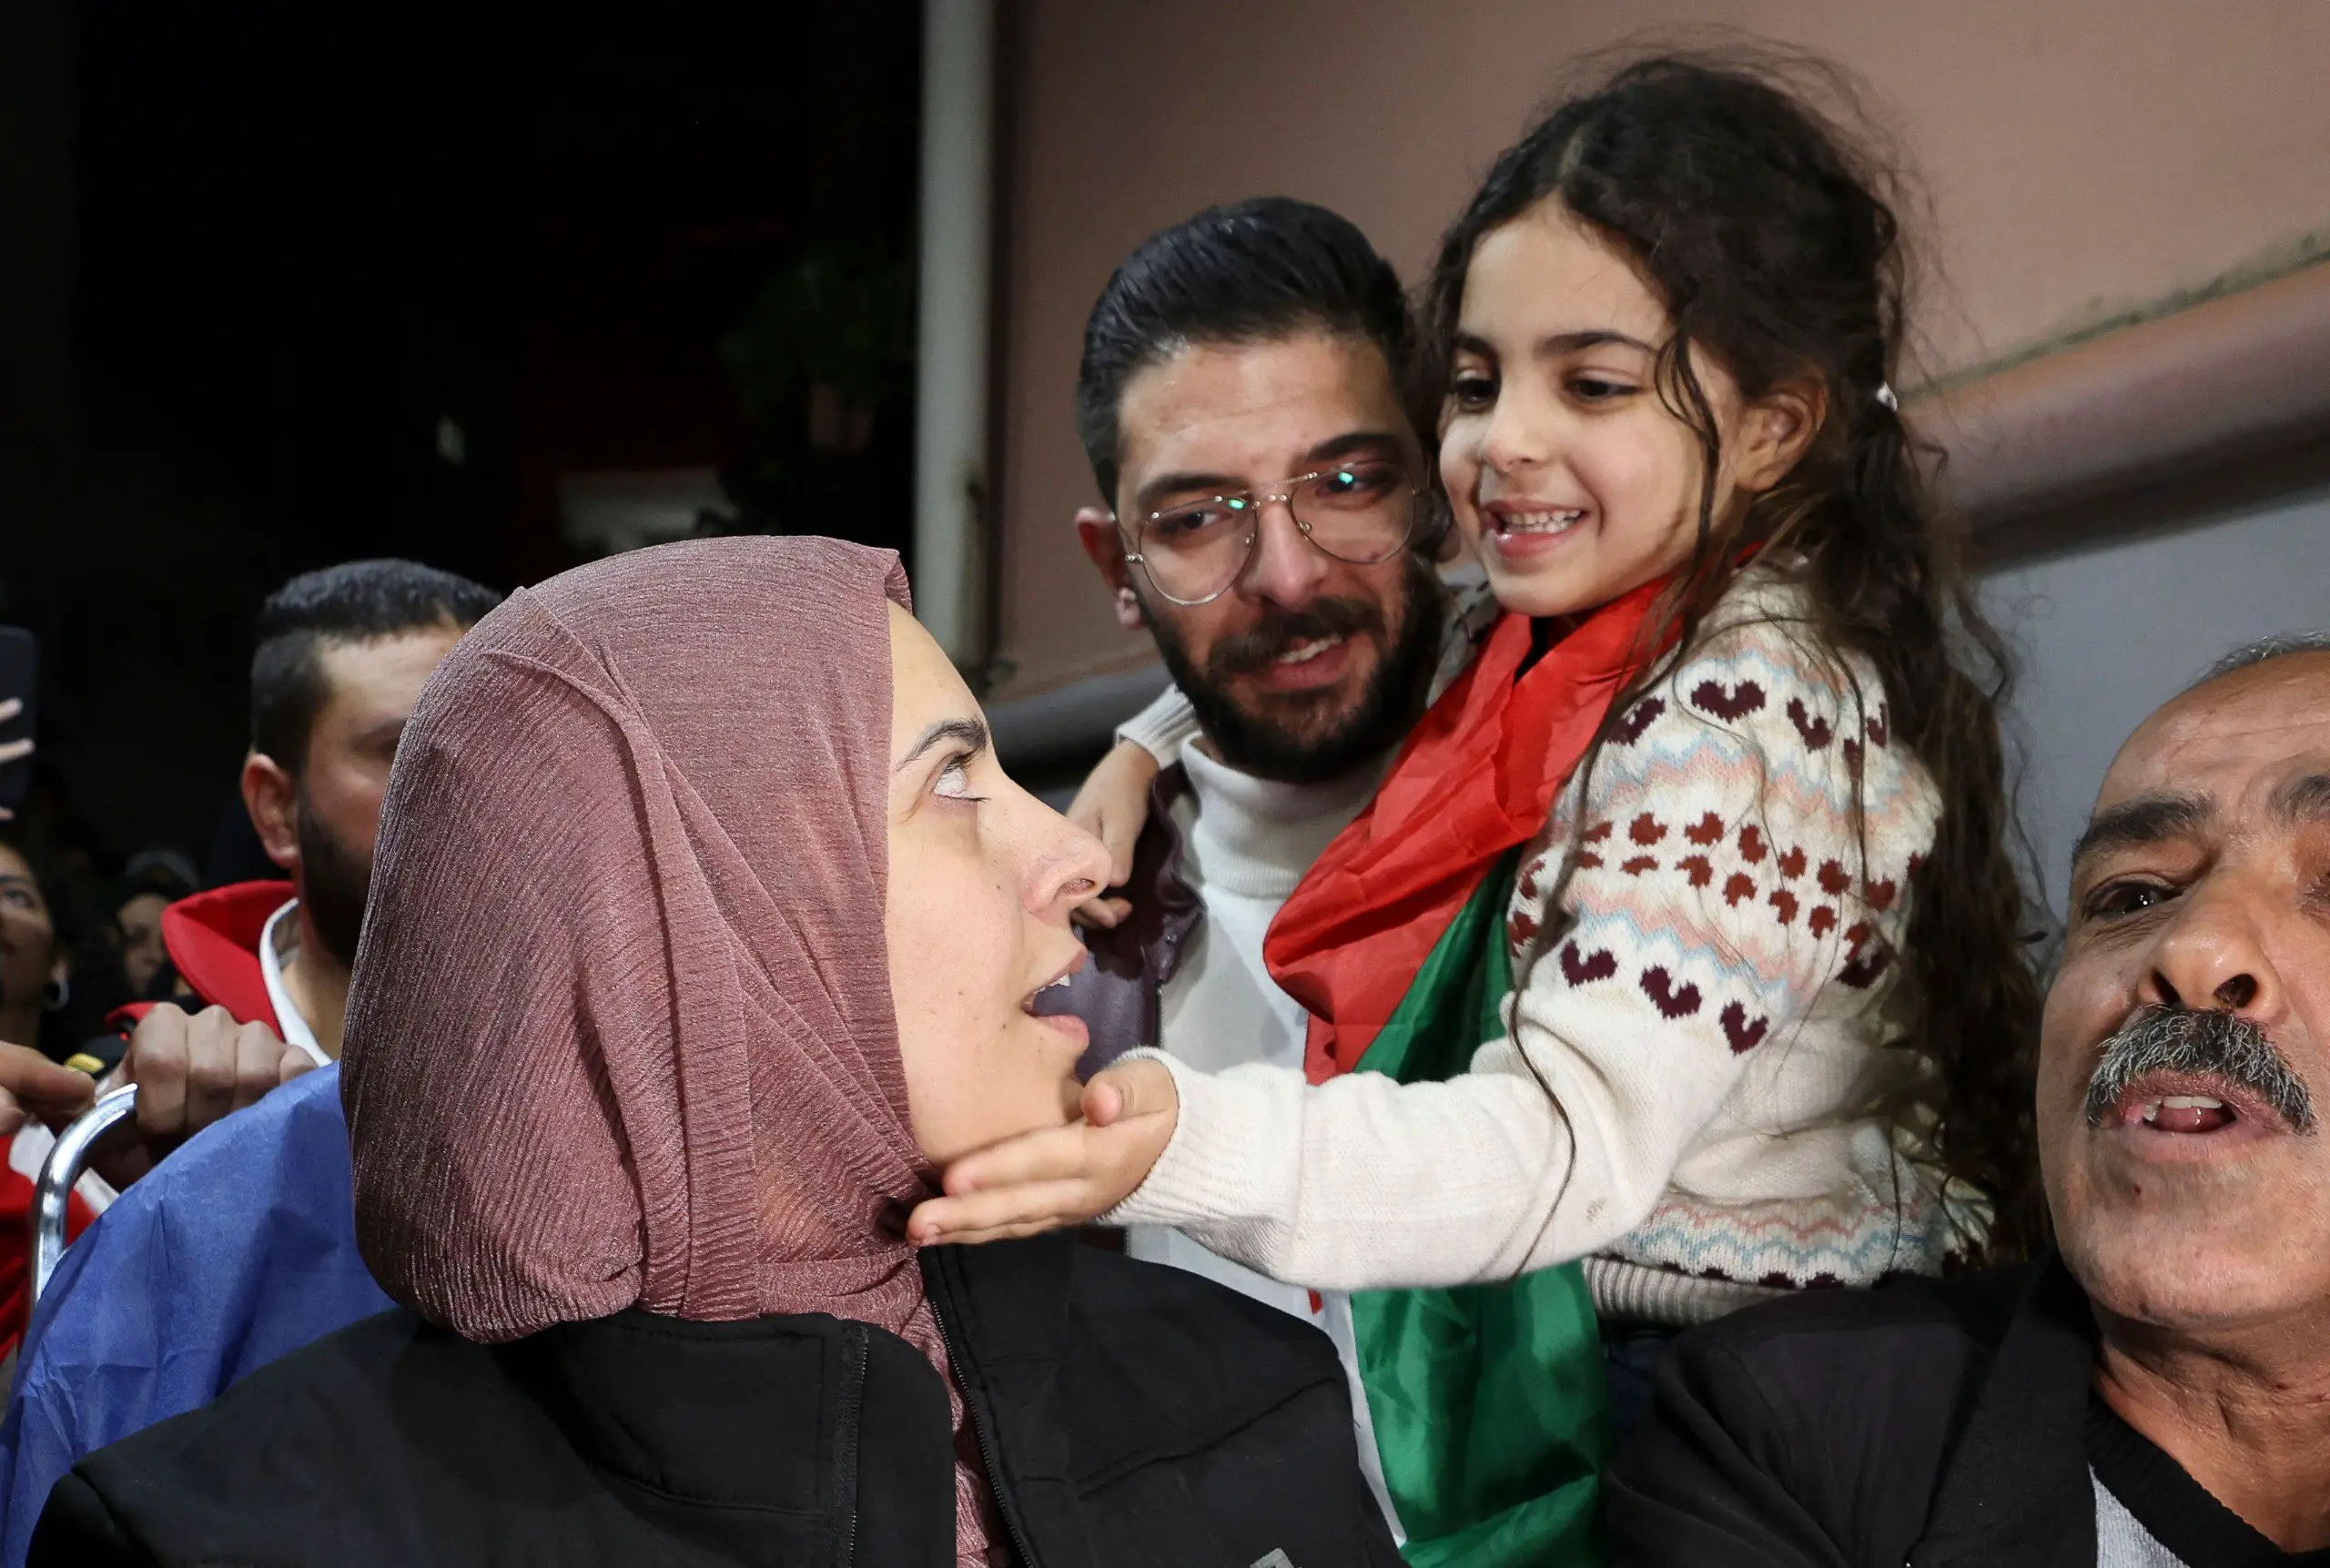 الأسيرة المحررة روضة أبو عجمية، في مخيم الدهيشة للاجئين في بيت لحم، في الضفة الغربية المحتلة، بعد تحريرها على يد المقاومة في قطاع غزة، في صفقة تبادل الأسرى